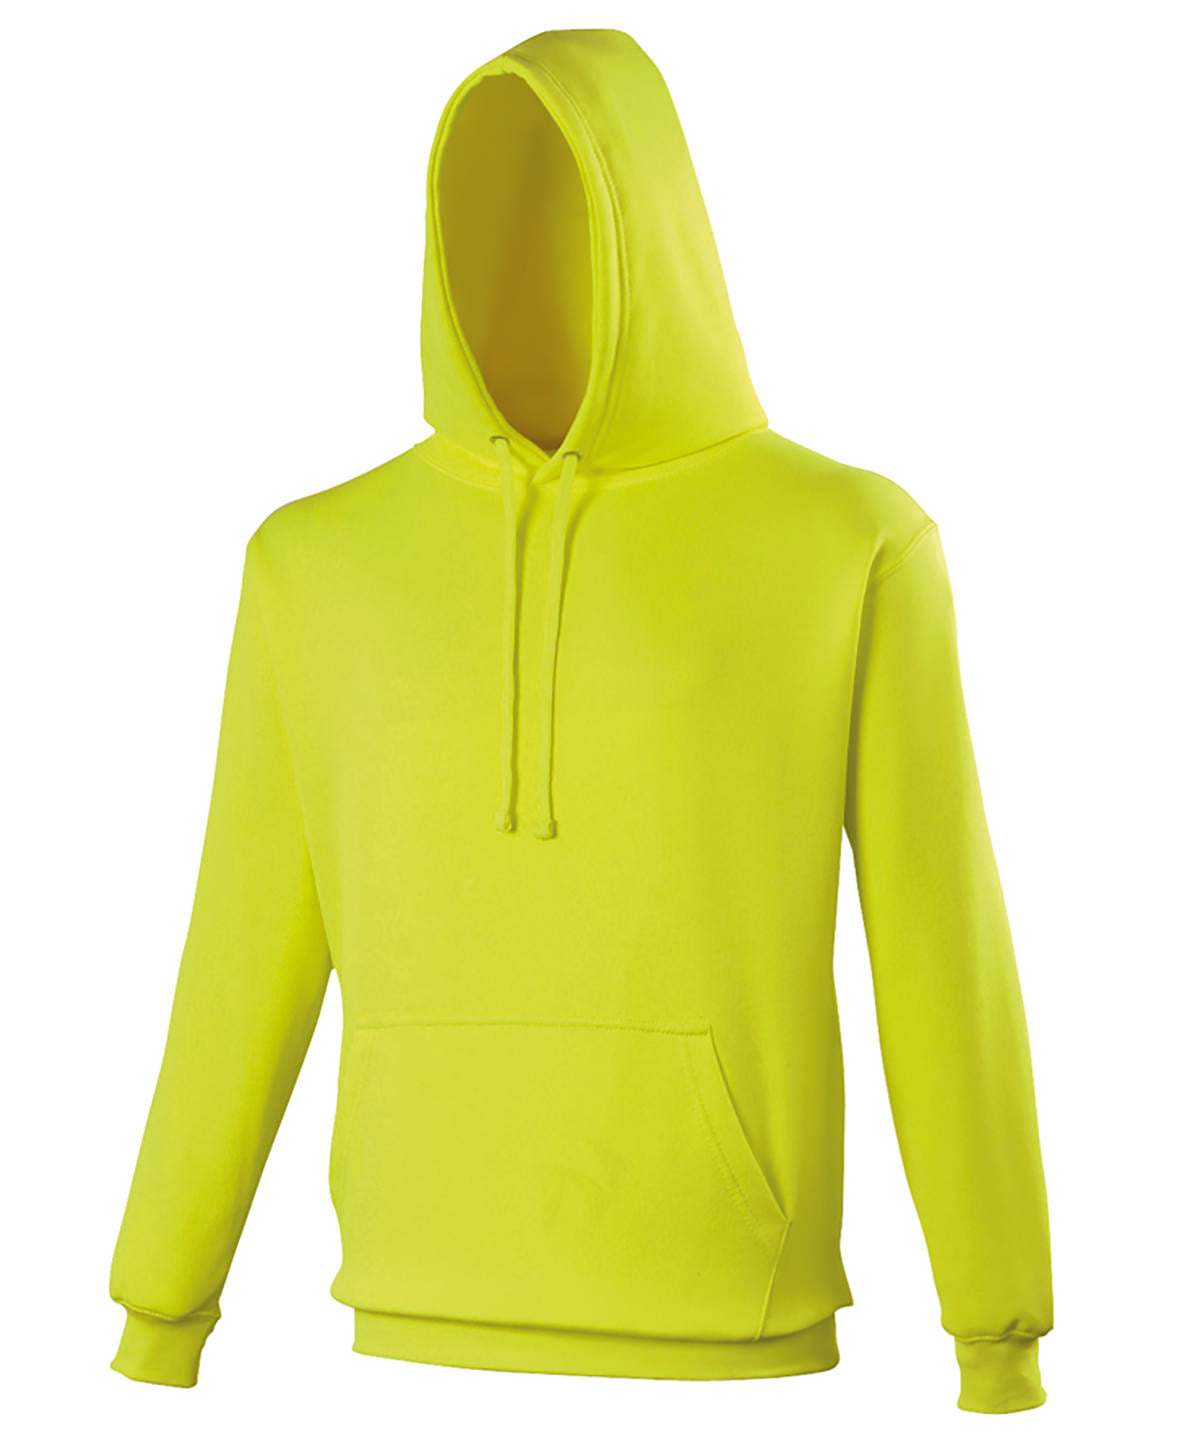 Personalised Hoodies - Neon Green AWDis Just Hoods Electric hoodie